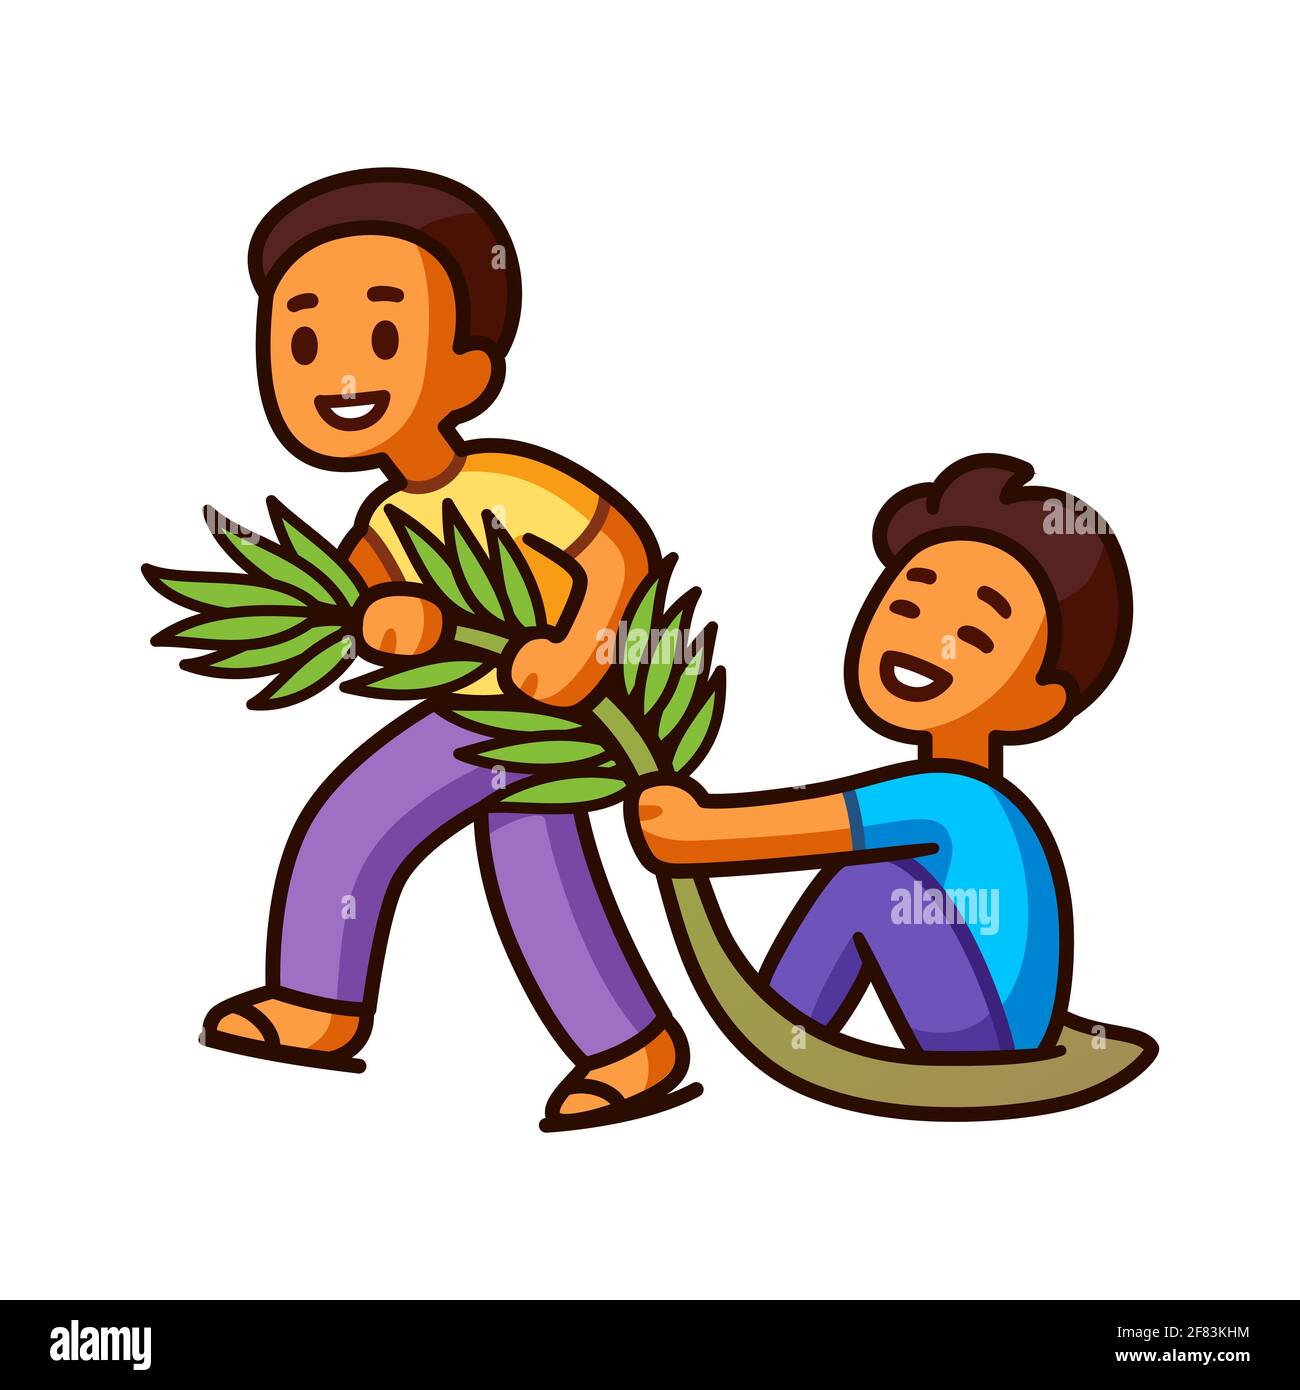 Tarik upih, traditionelles malaysisches Spiel mit Palmwedelschlitten. Zwei niedliche Cartoon-Jungen mit Spaß. Vektorgrafik Clip Art Illustration. Stock Vektor